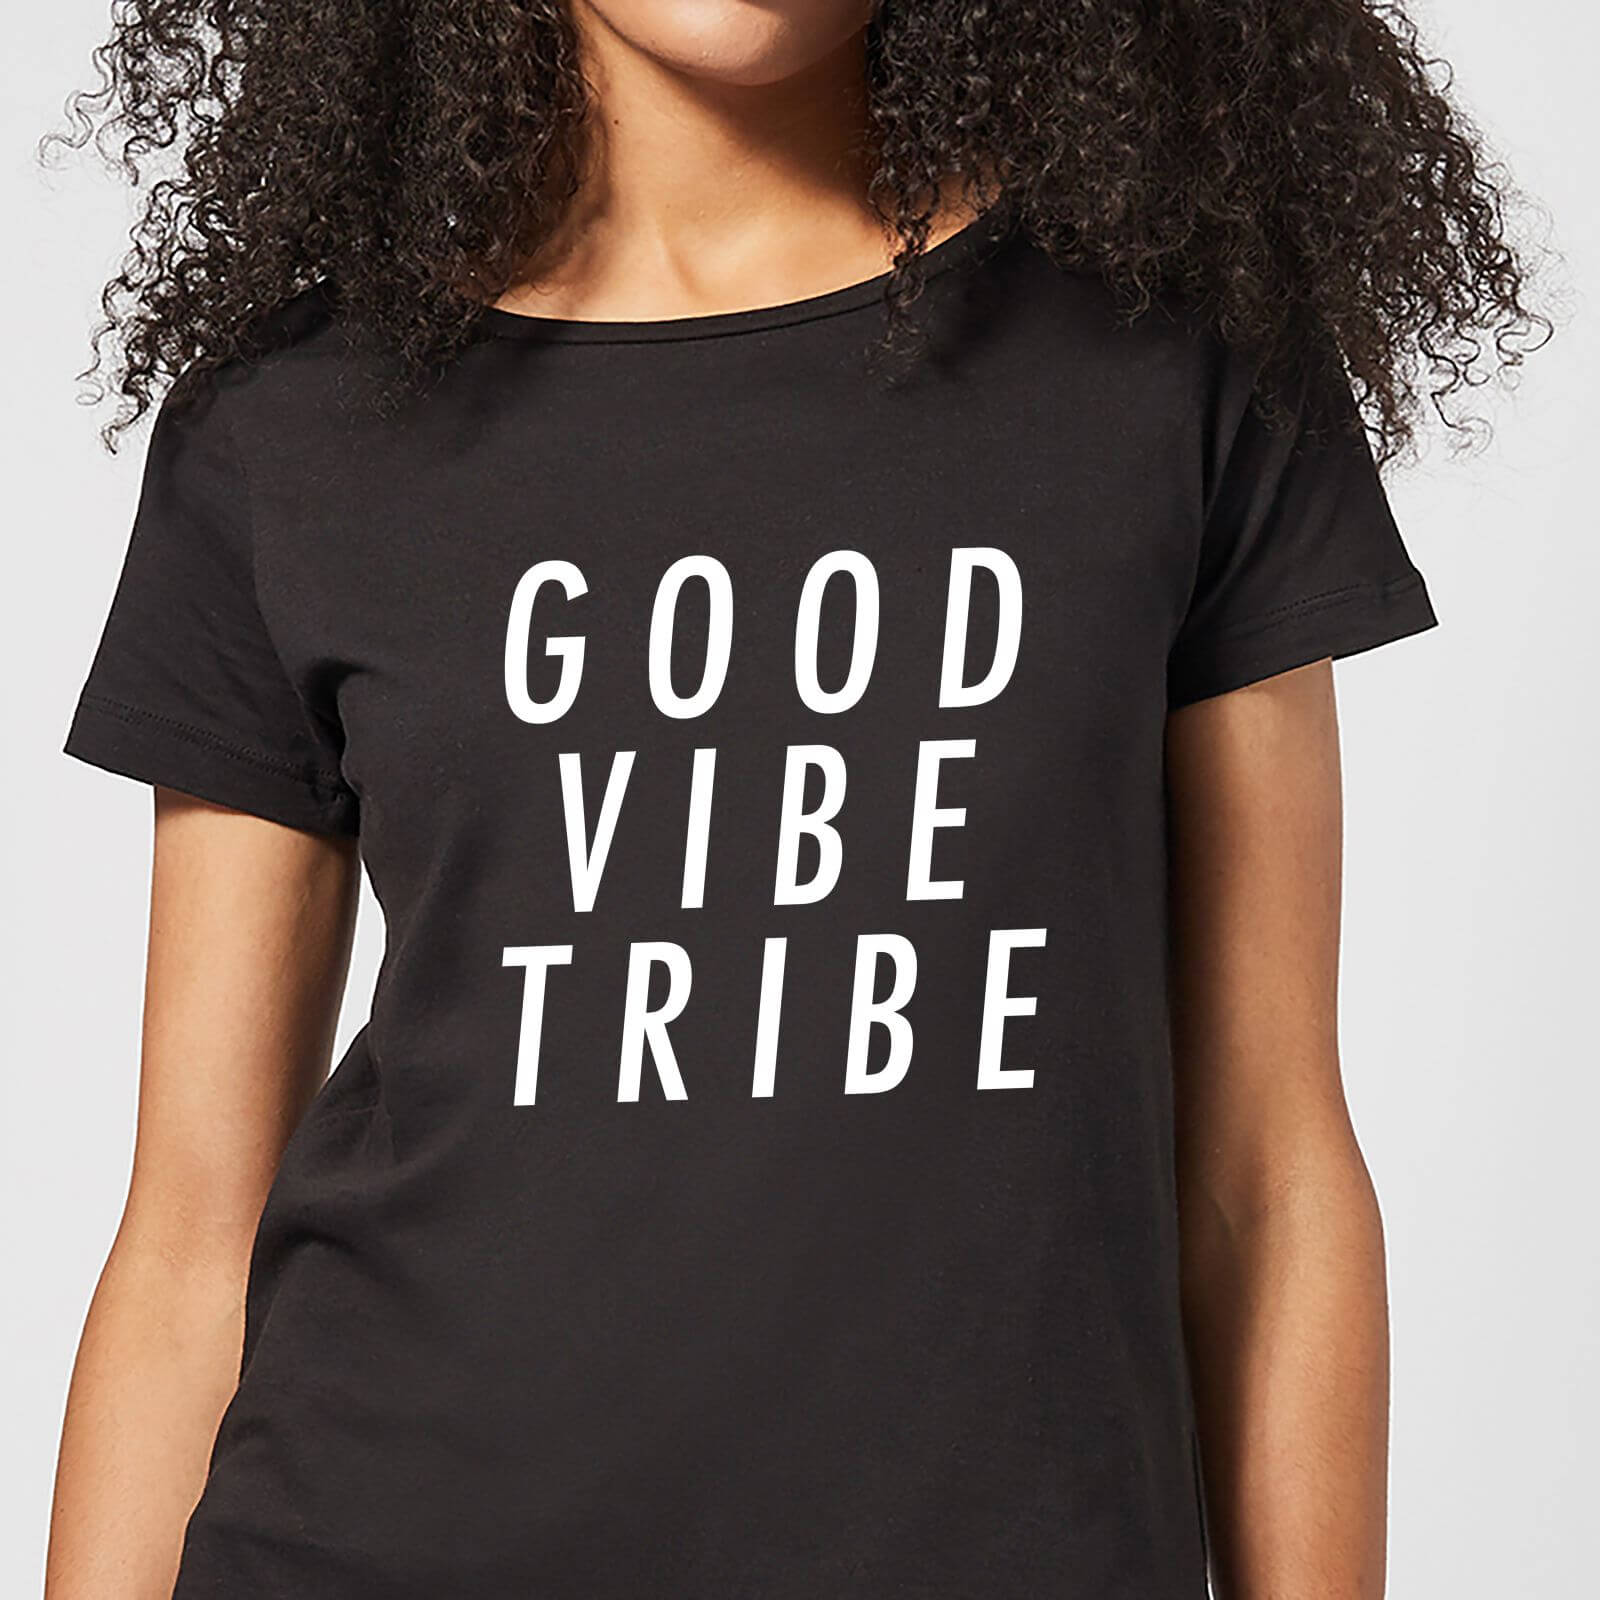 Good Vibe Tribe Women's T-Shirt - Black - S - Black